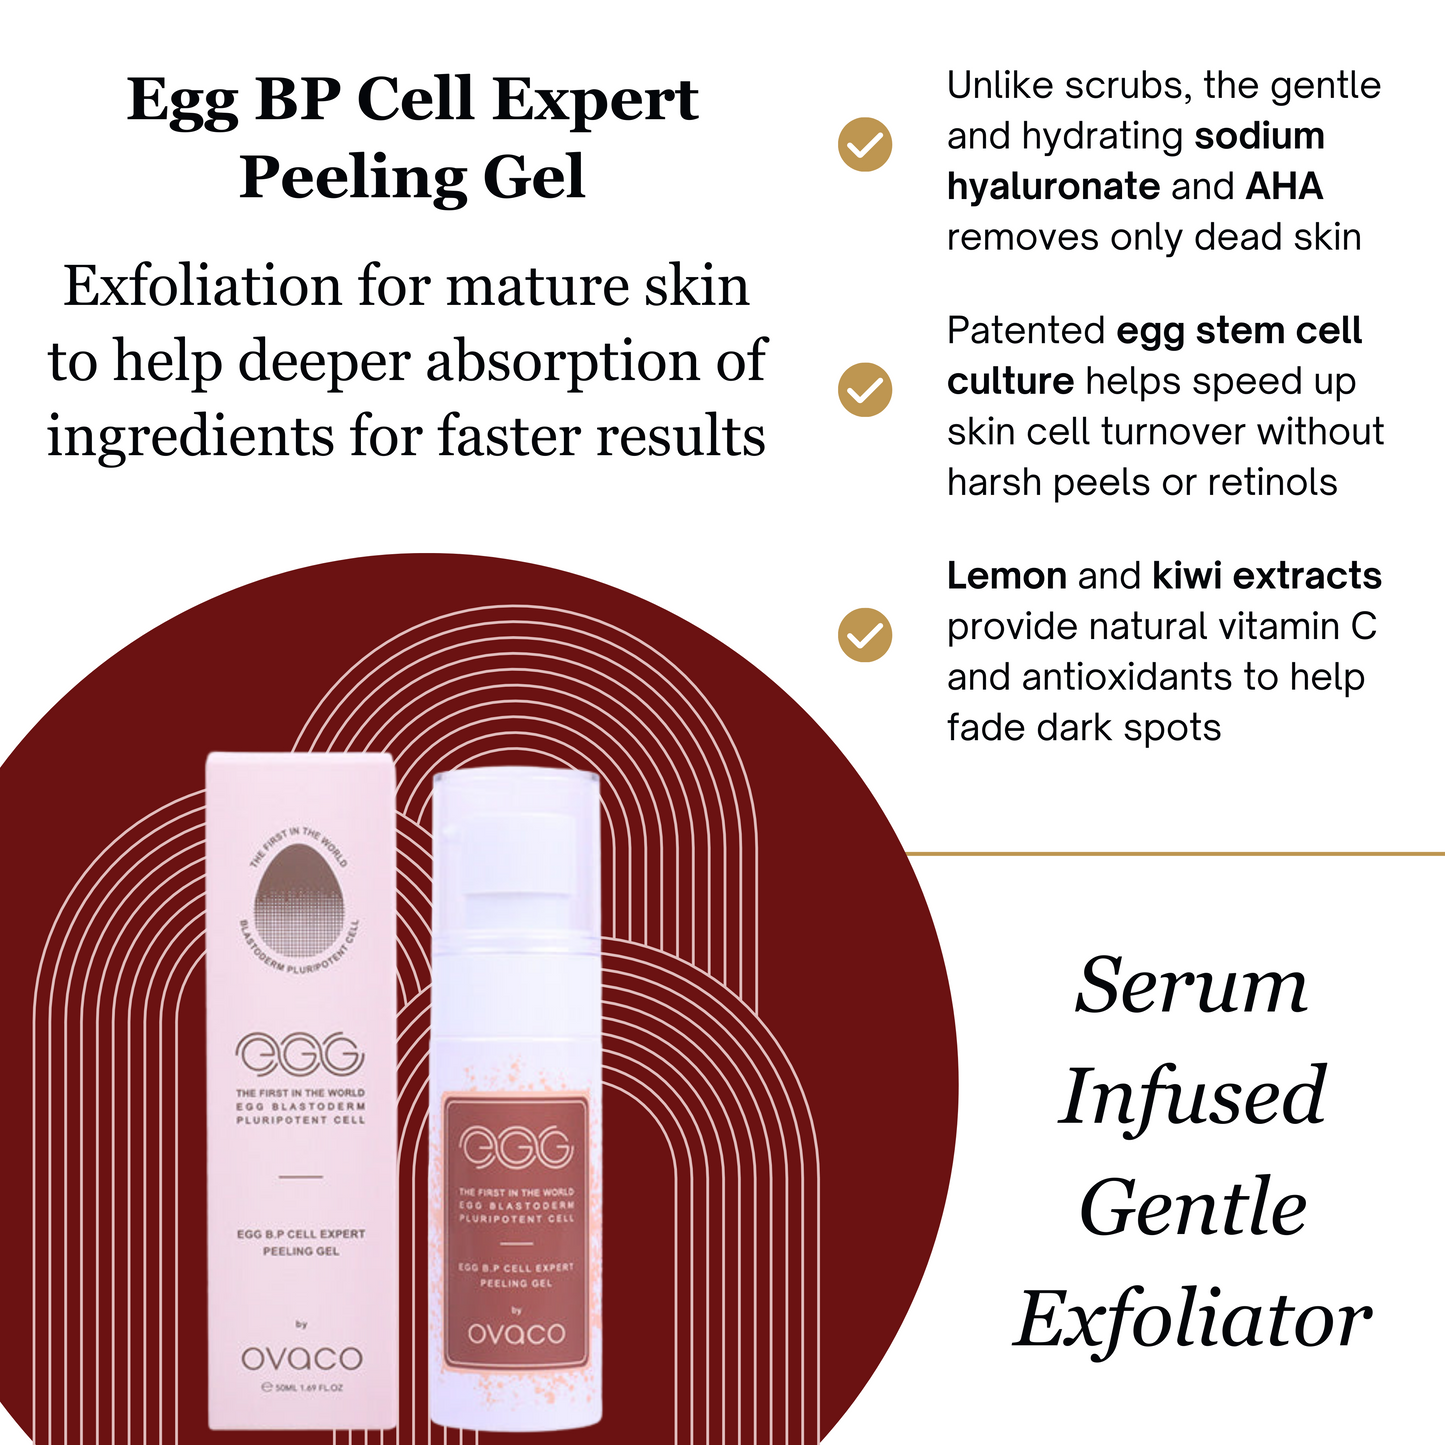 Egg BP Cell Expert Peeling Gel